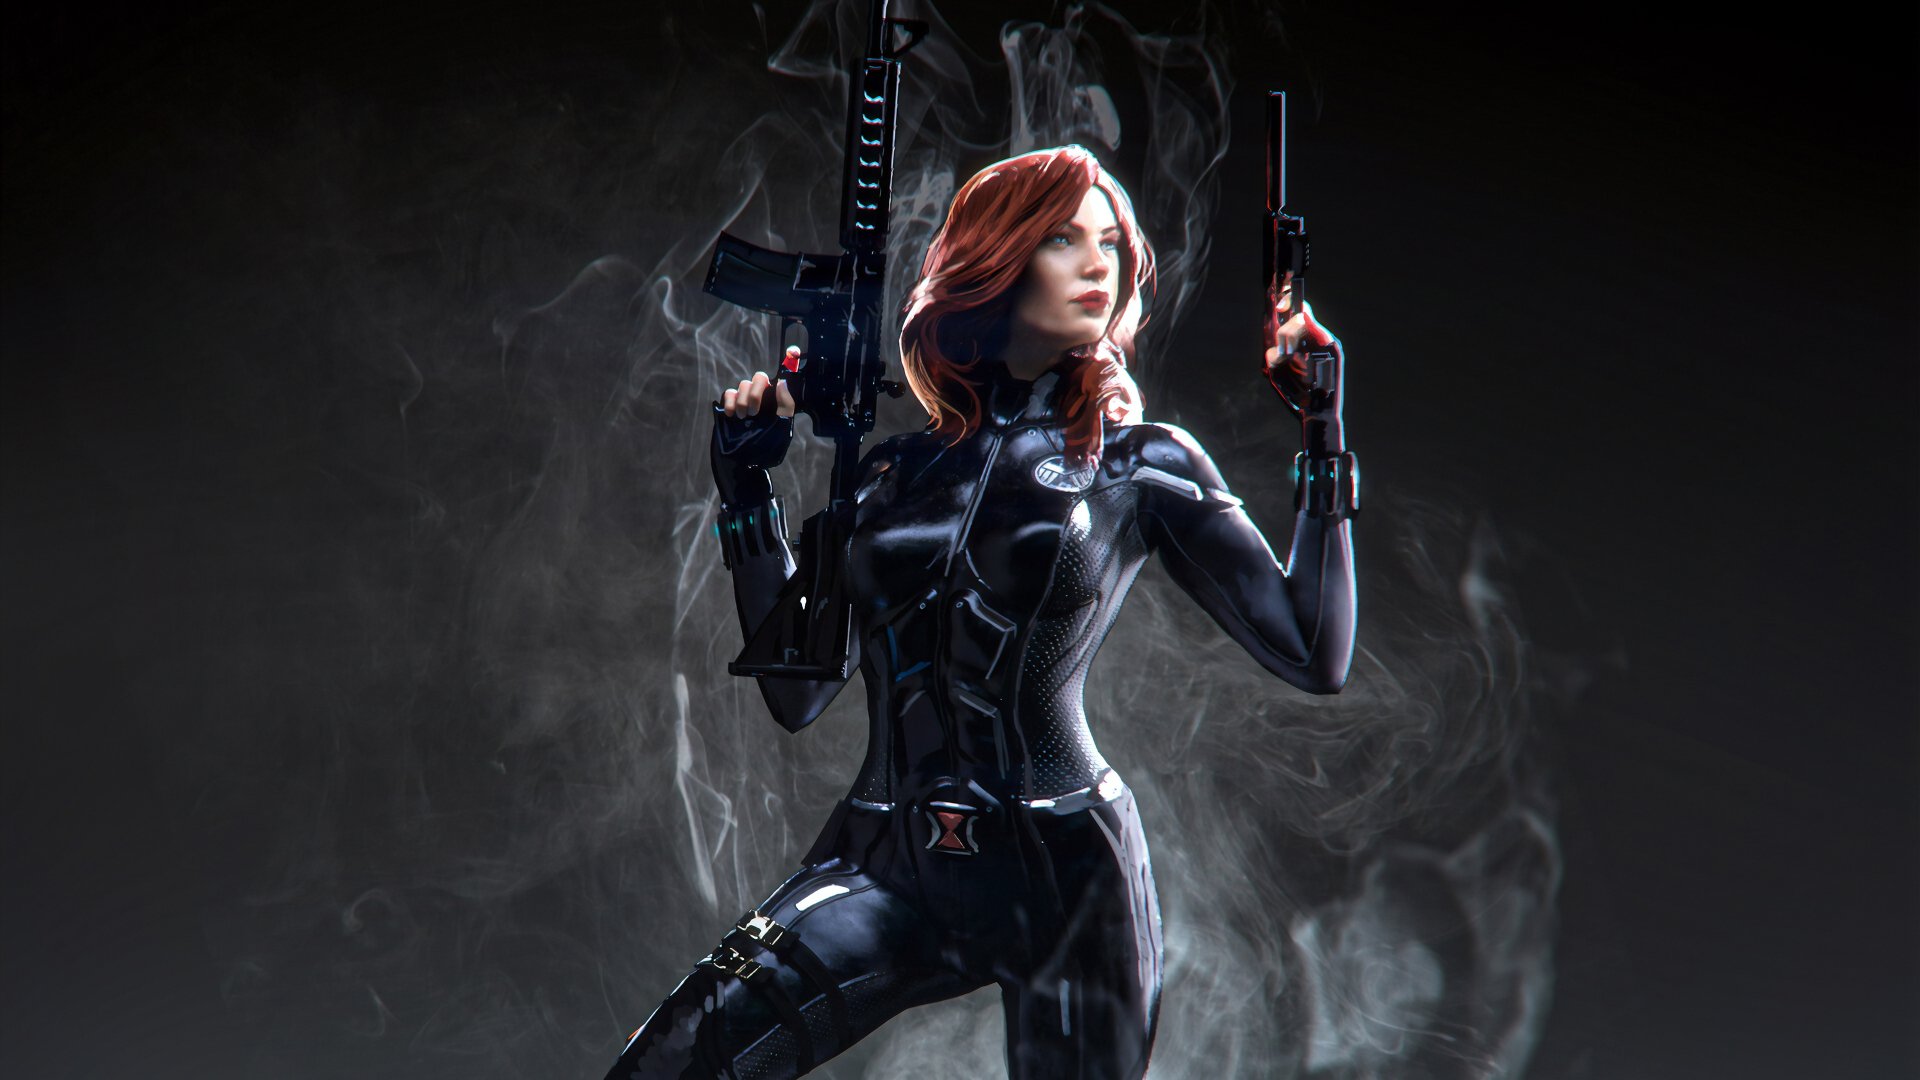 Black Widow 4k Ultra HD Wallpaper | Hintergrund | 3840x2160 | ID